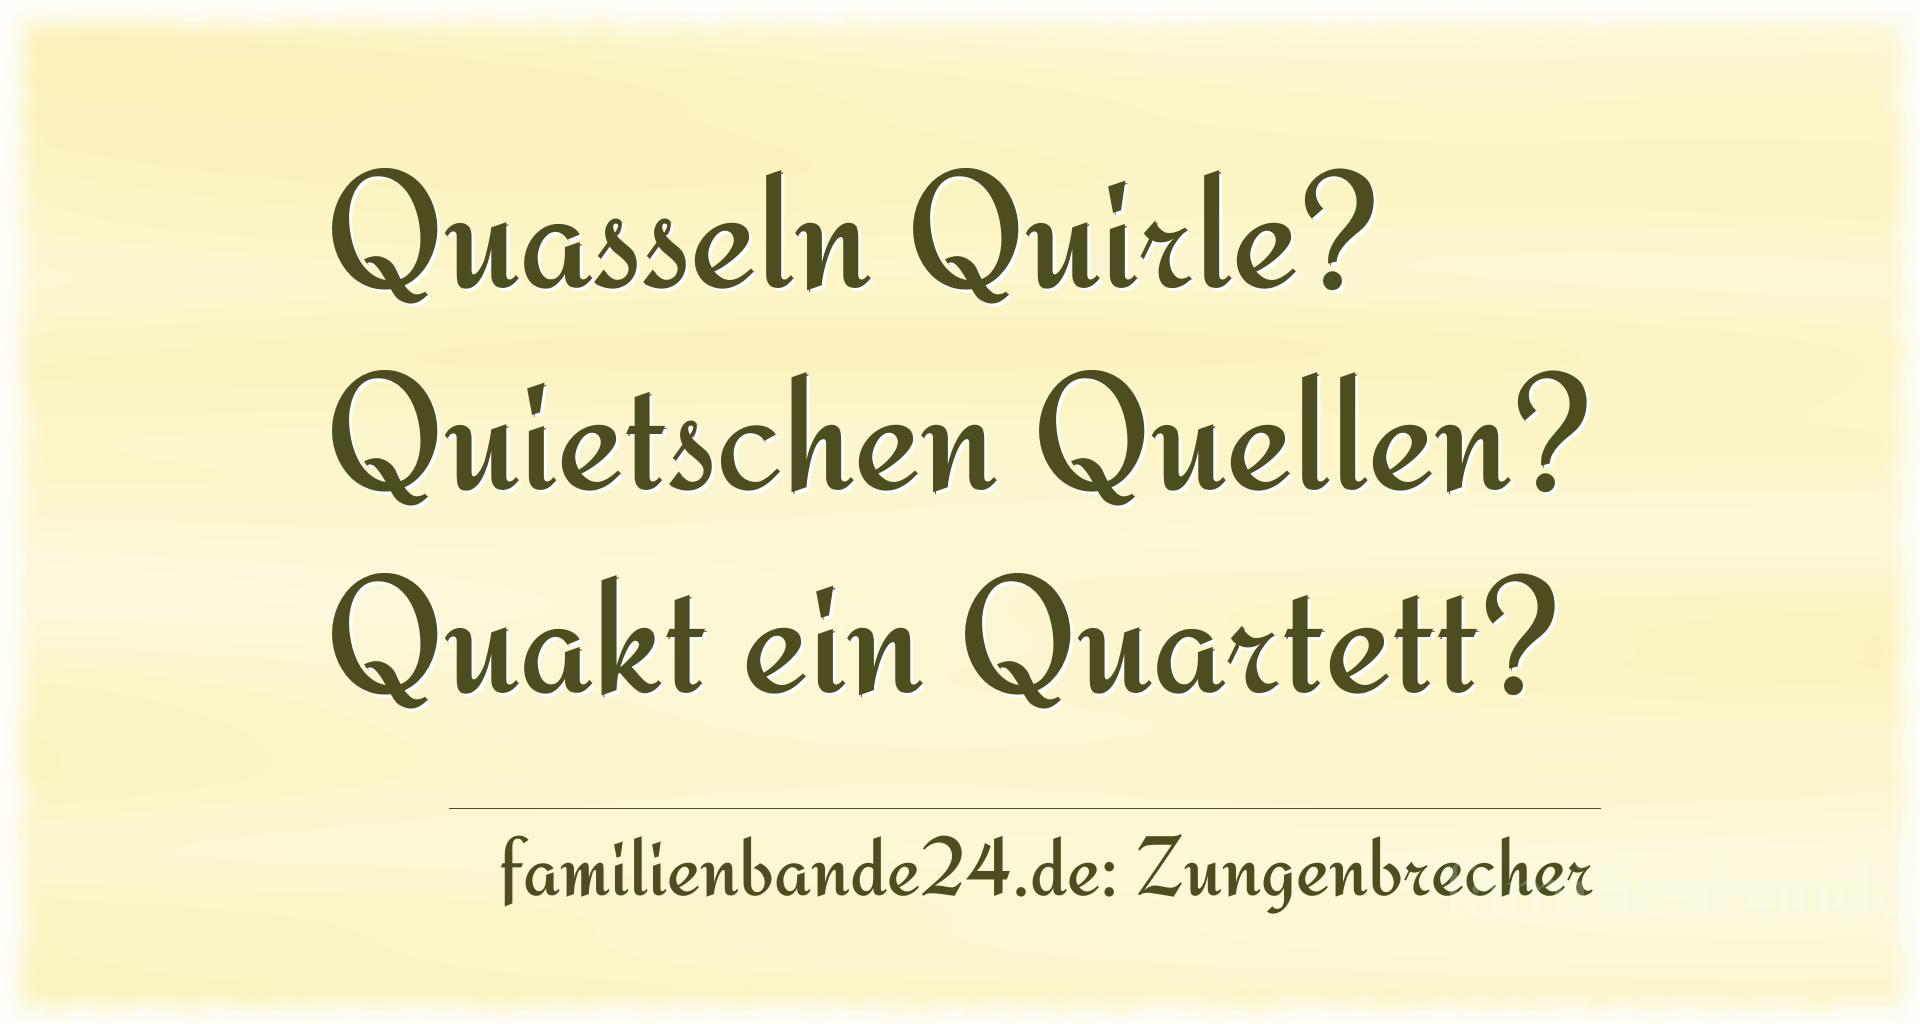 Zungenbrecher Nummer 738: Quasseln Quirle? Quietschen Quellen? Quakt ein Quartett?